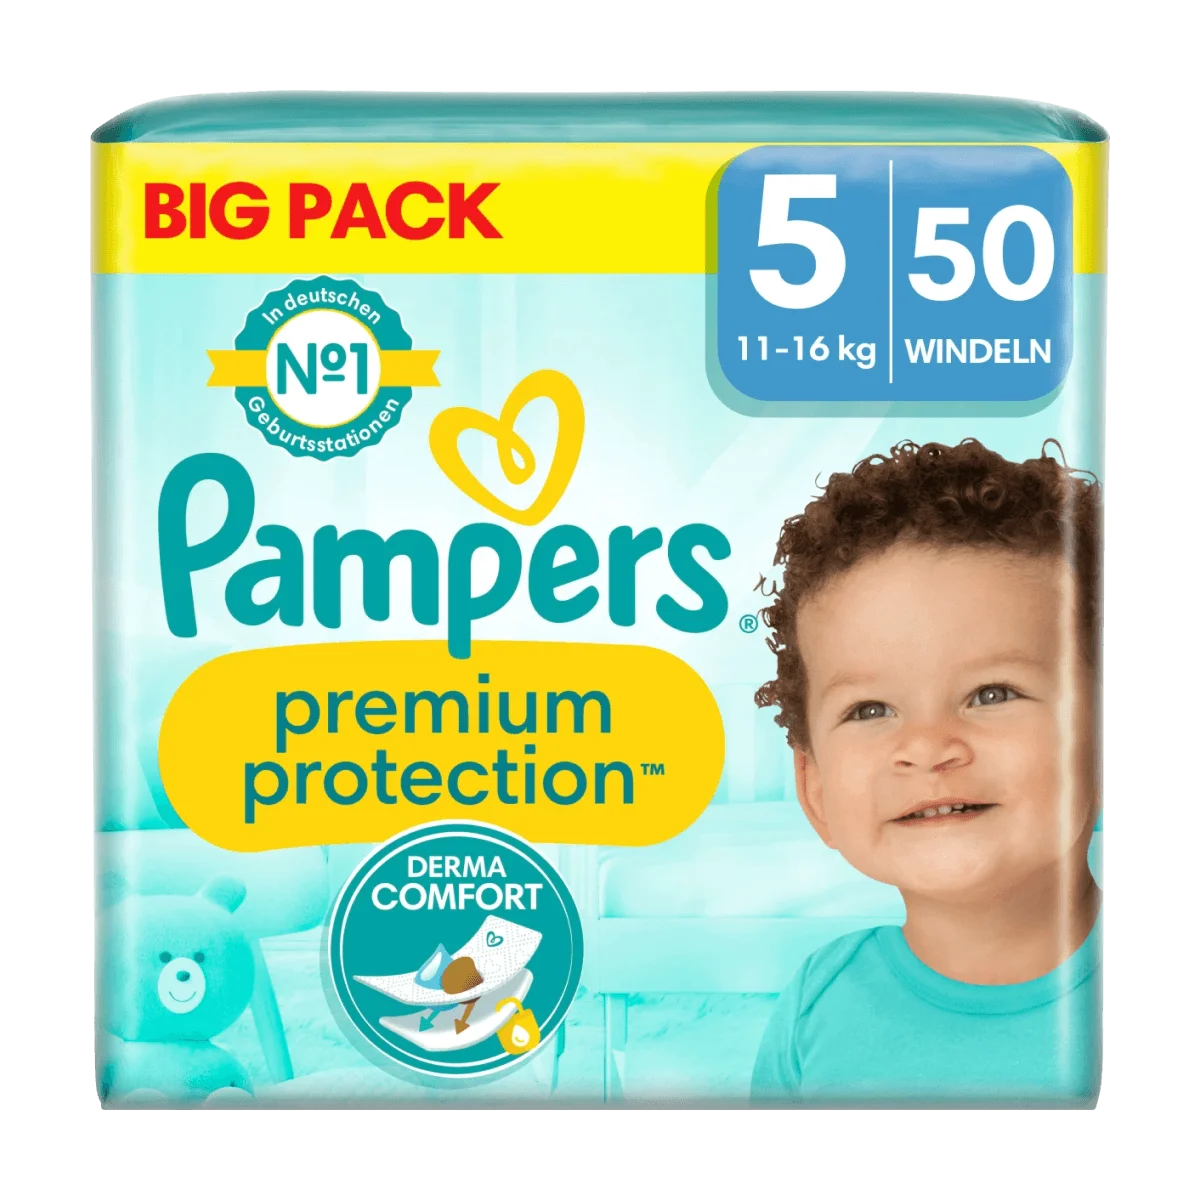 Pampers Windeln Premium Protection Gr. 5 Junior (11-16 kg), Big Pack, 50 Stk